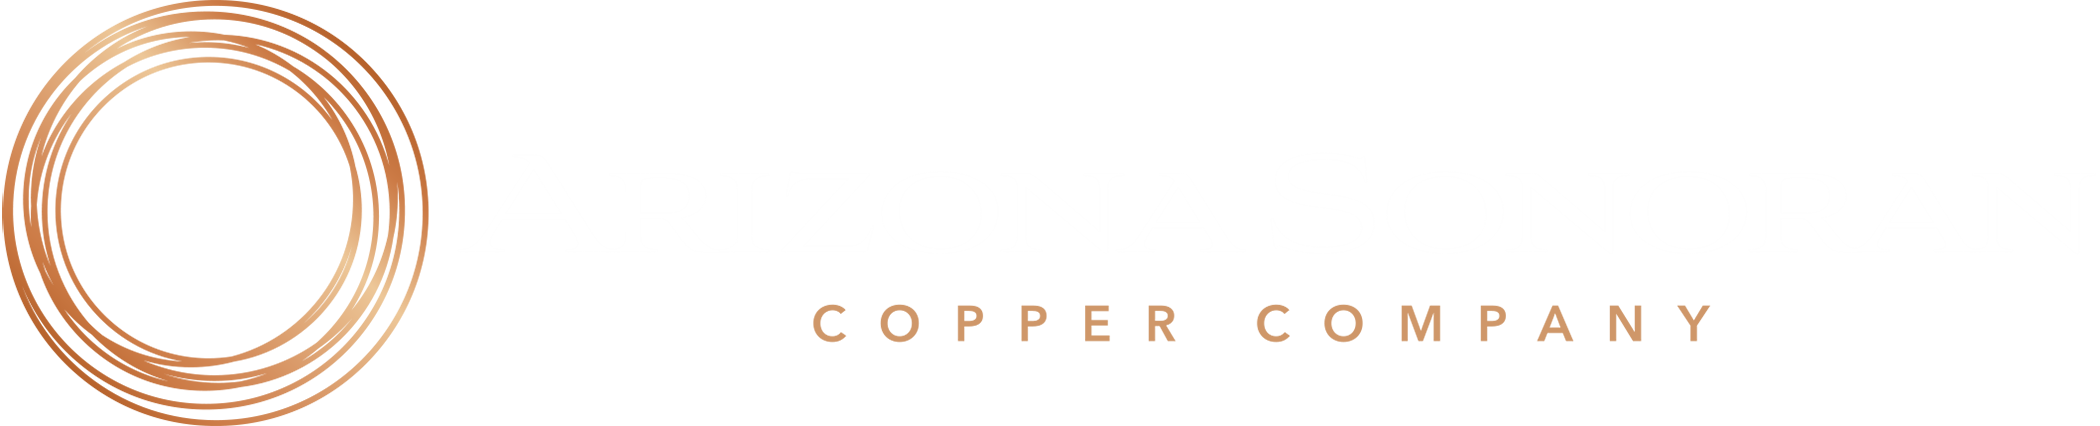 Arizona Sonoran Copper Company Logo